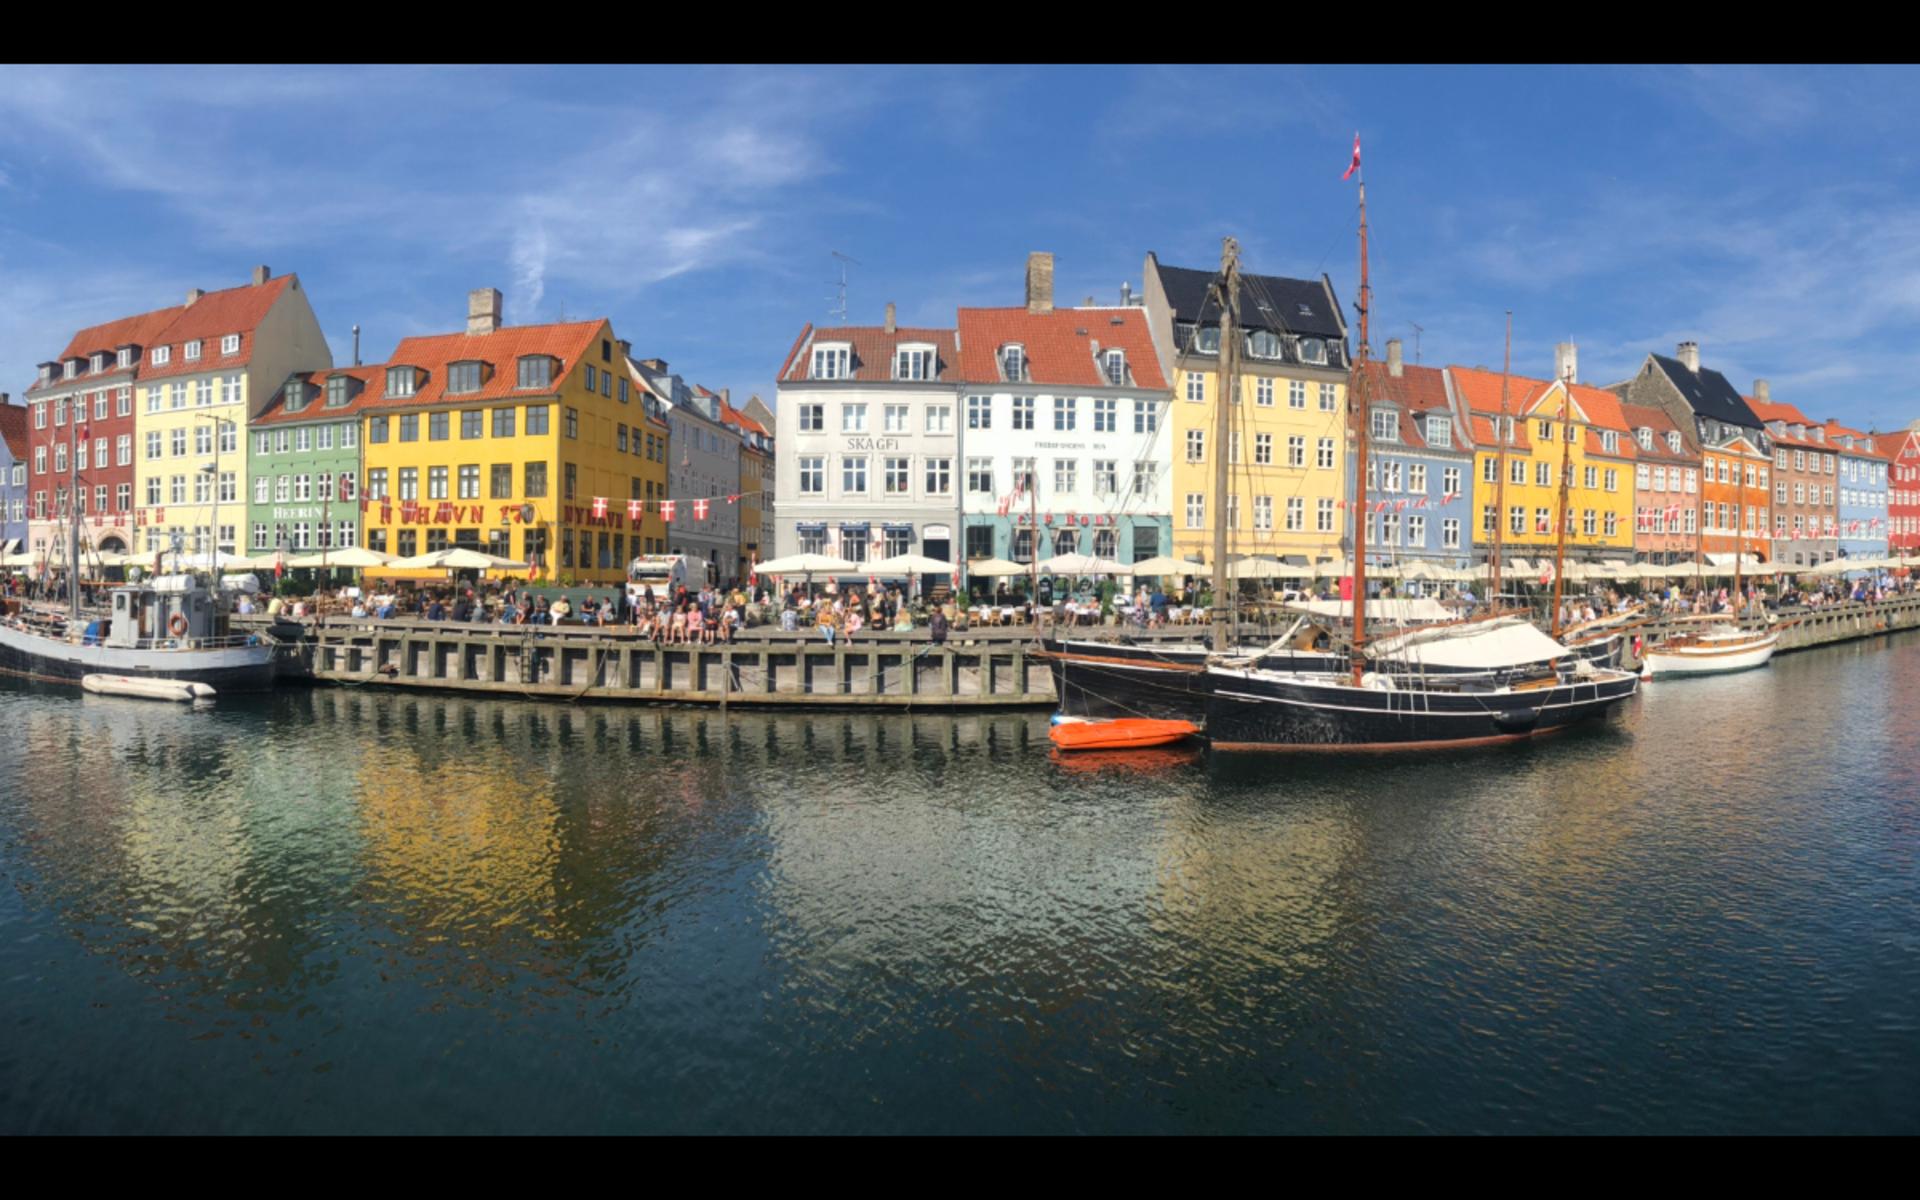 ”Sänder över en bild på Nyhavn i Köpenhamn. Hade tre underbara dagar där med min fru på vår semester.”, skriver Martin Stumblín.